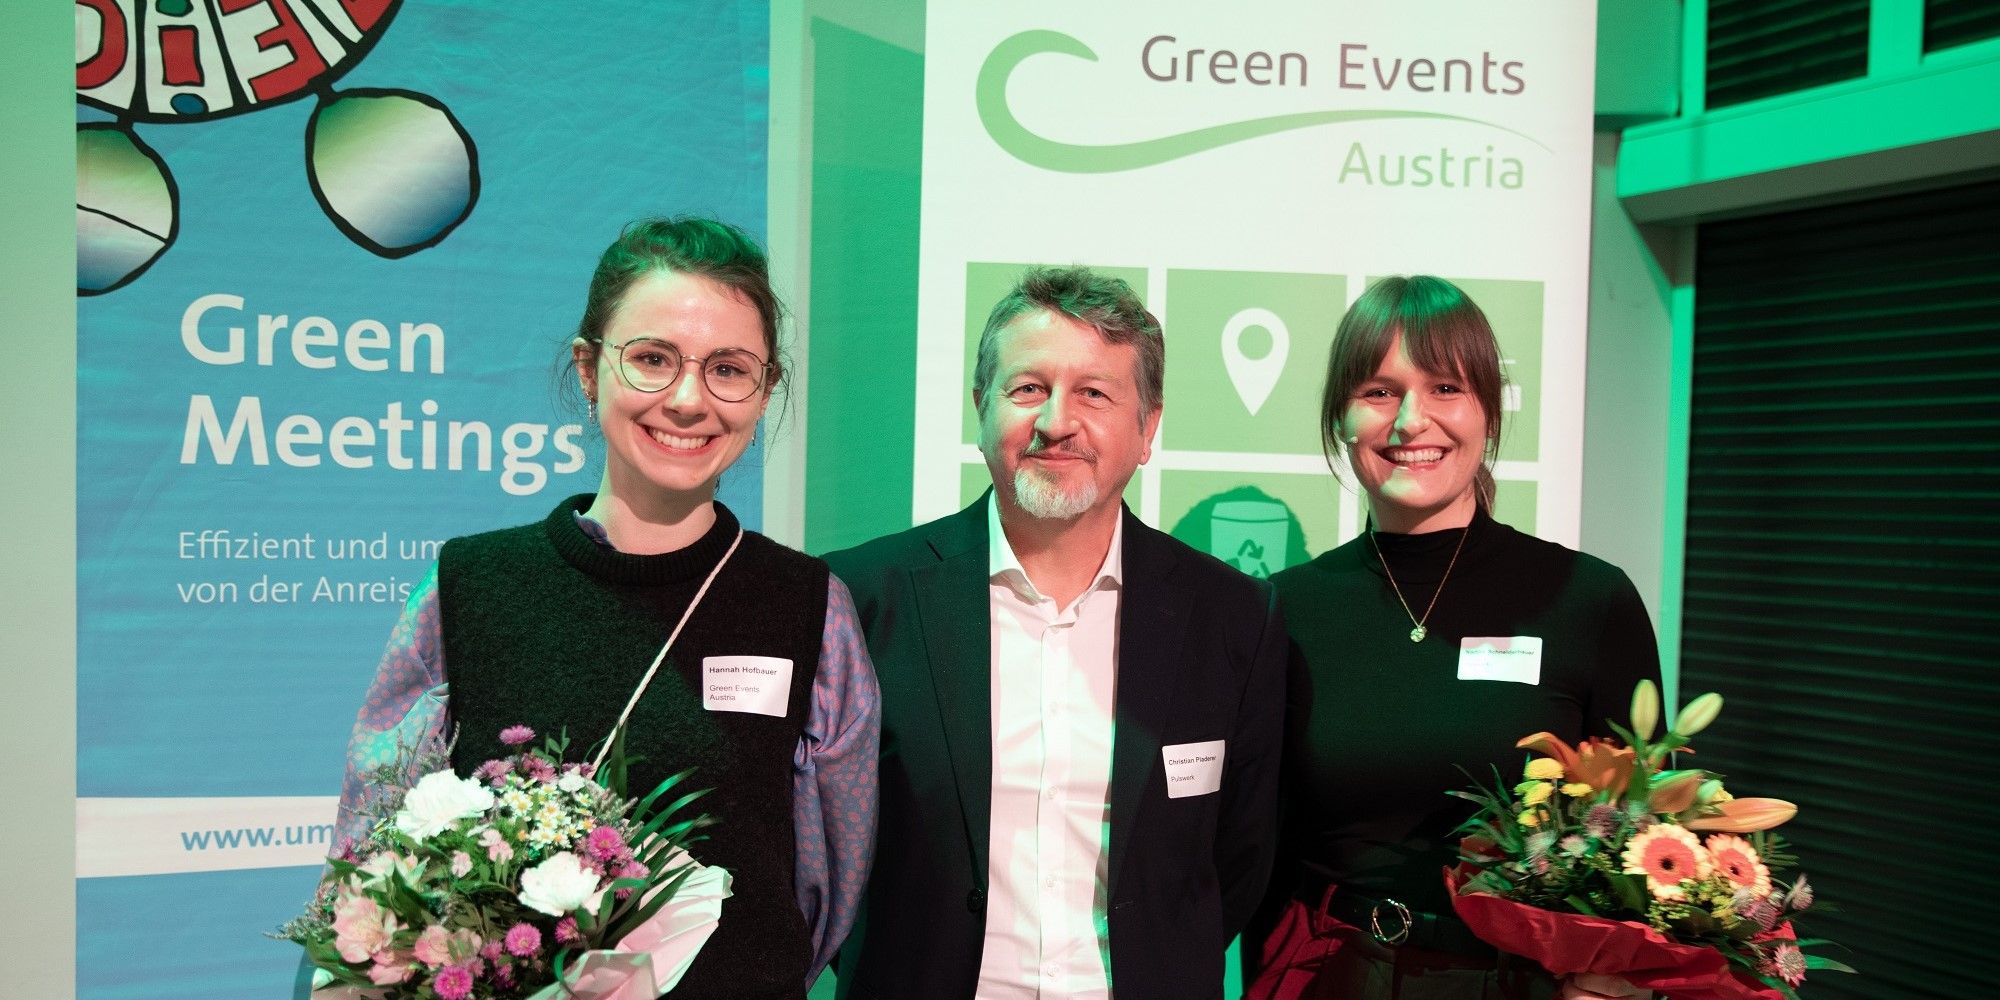 Green Events Austria